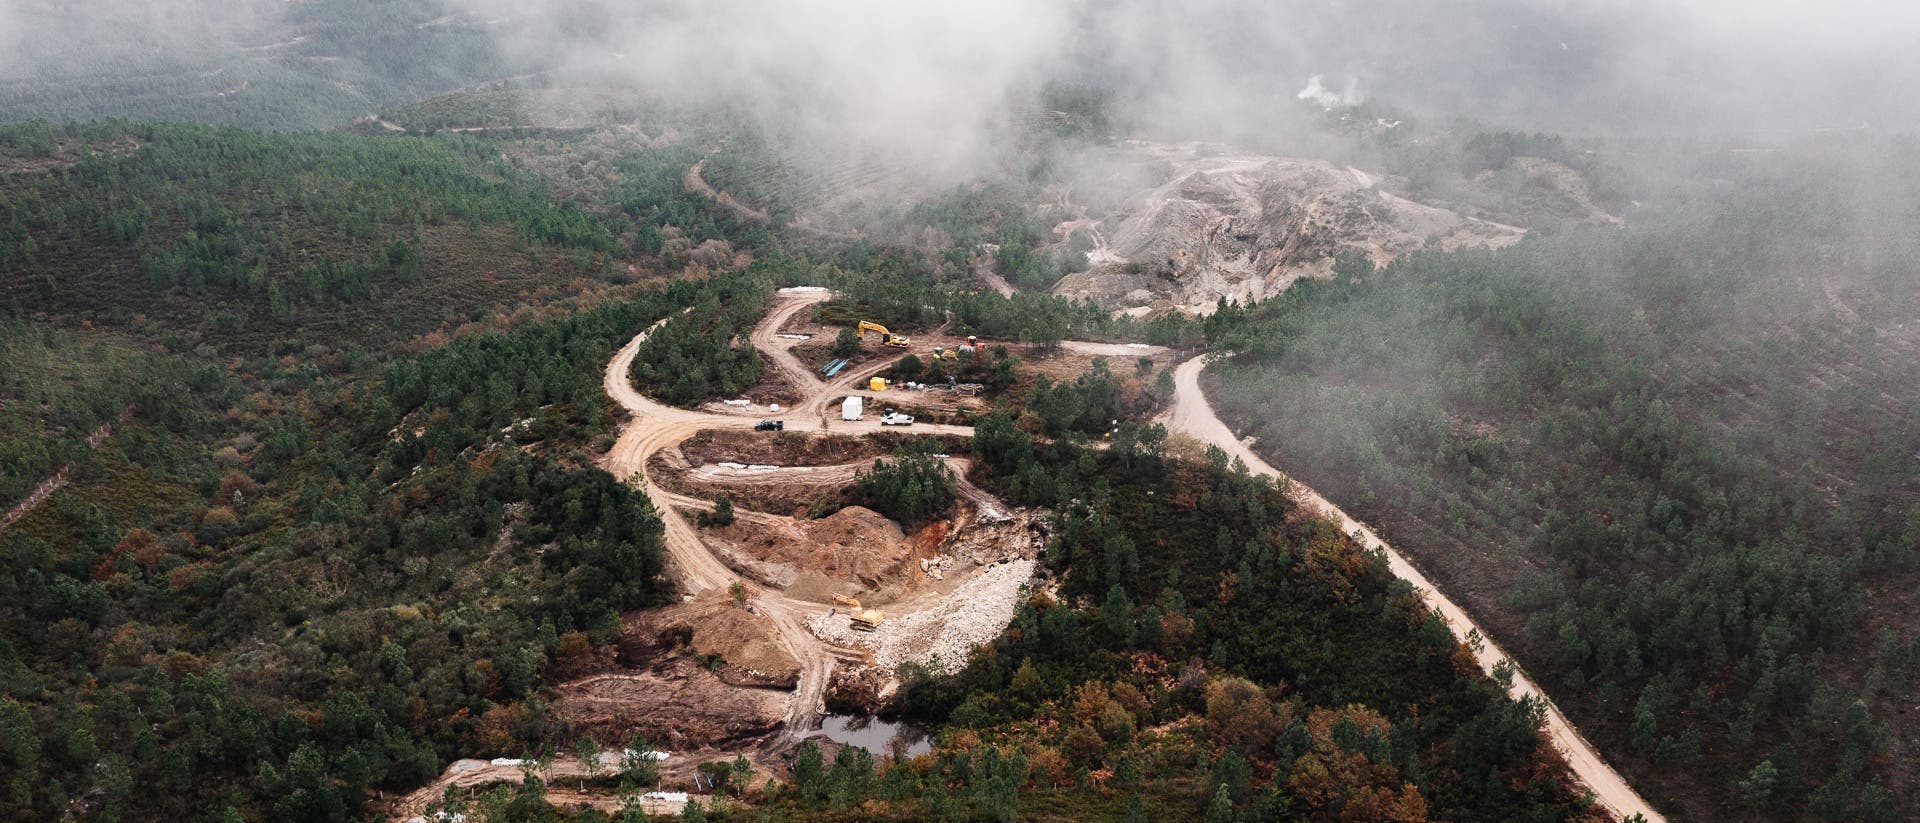 Eine Luftaufnahme zeigt eine Waldlandschaft, in deren Mitte eine Mine ausgebaggert wird.